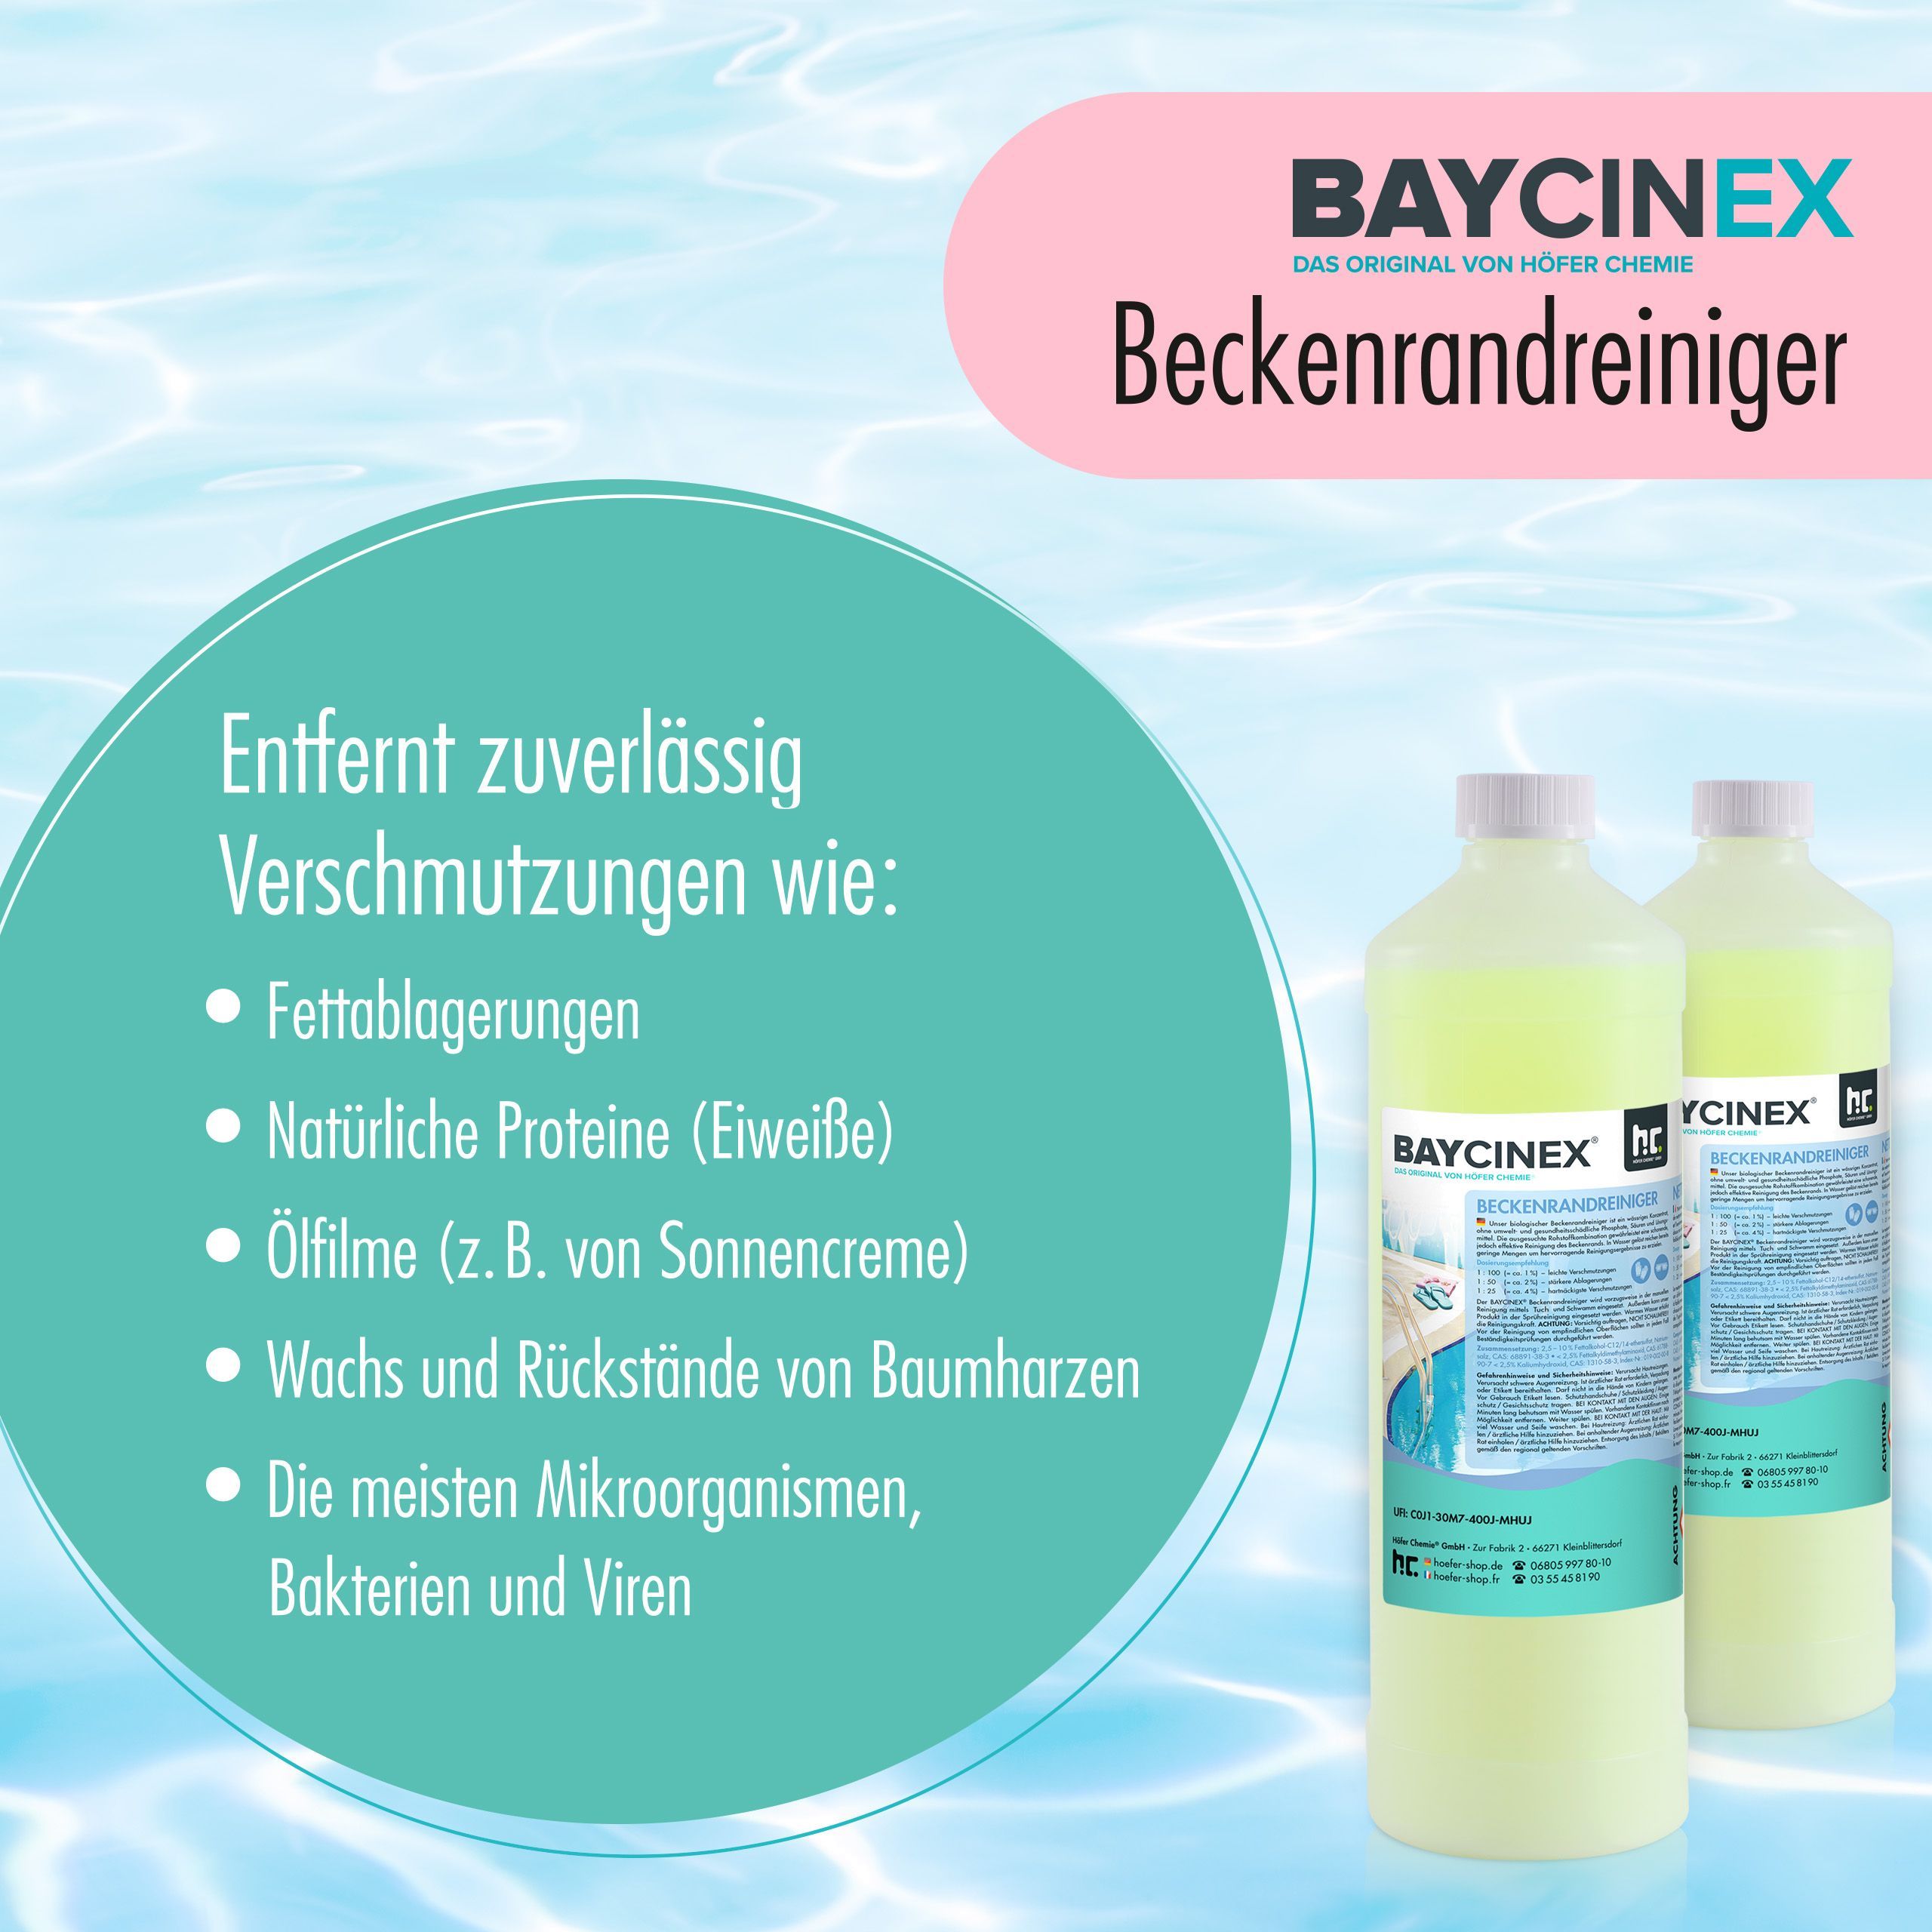 1 L BAYCINEX® Beckenrandreiniger